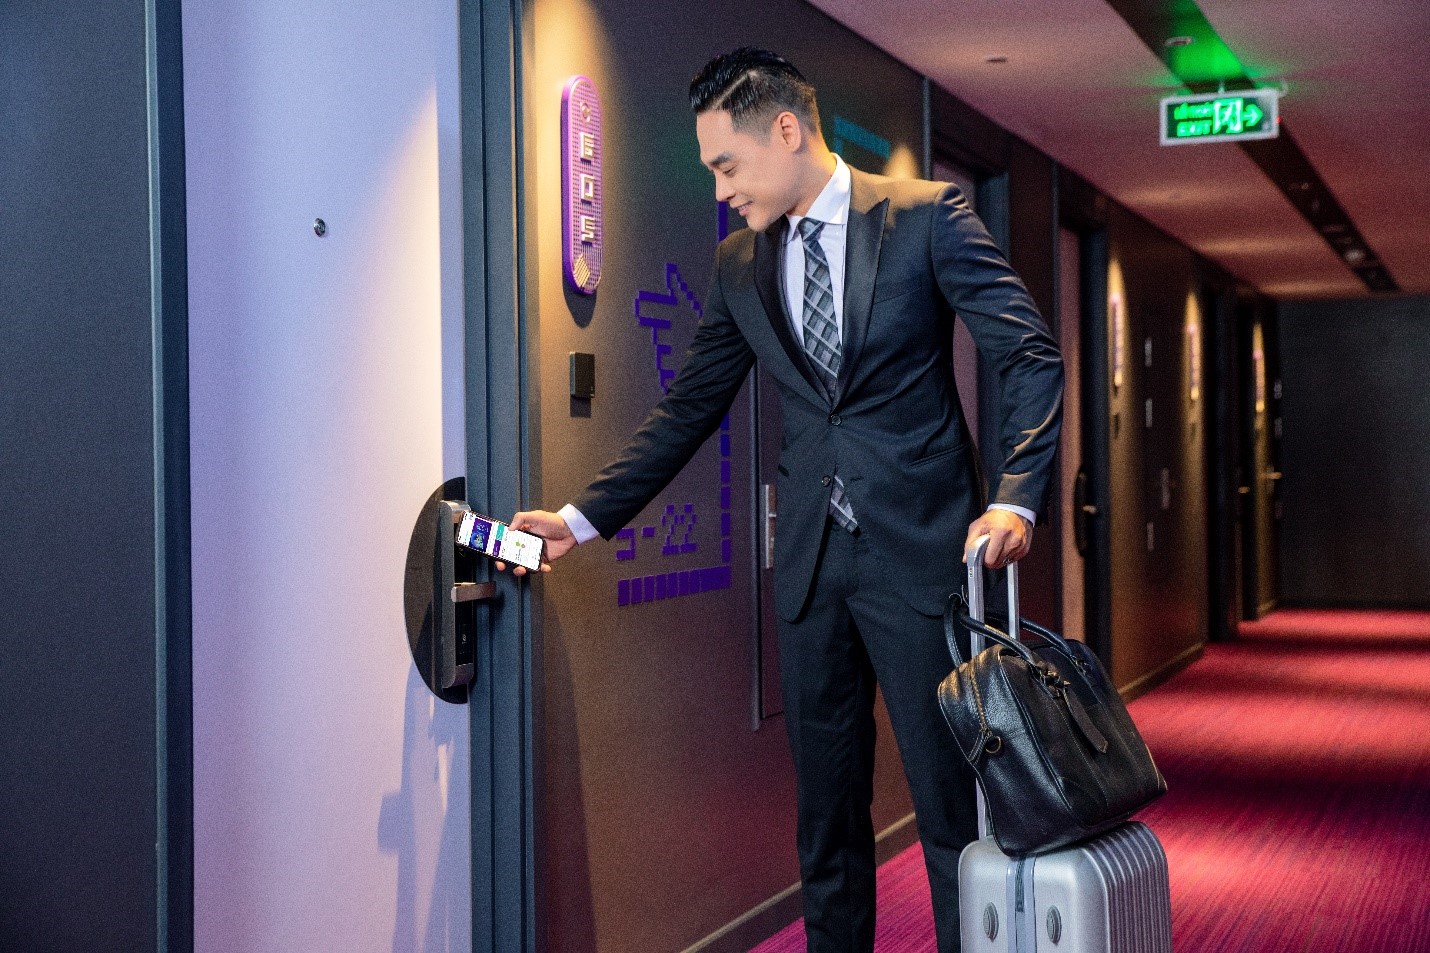 SOJO Hotels 'giải mã' giấc mơ khách hàng để định hình phong cách lưu trú mới - Ảnh 4.